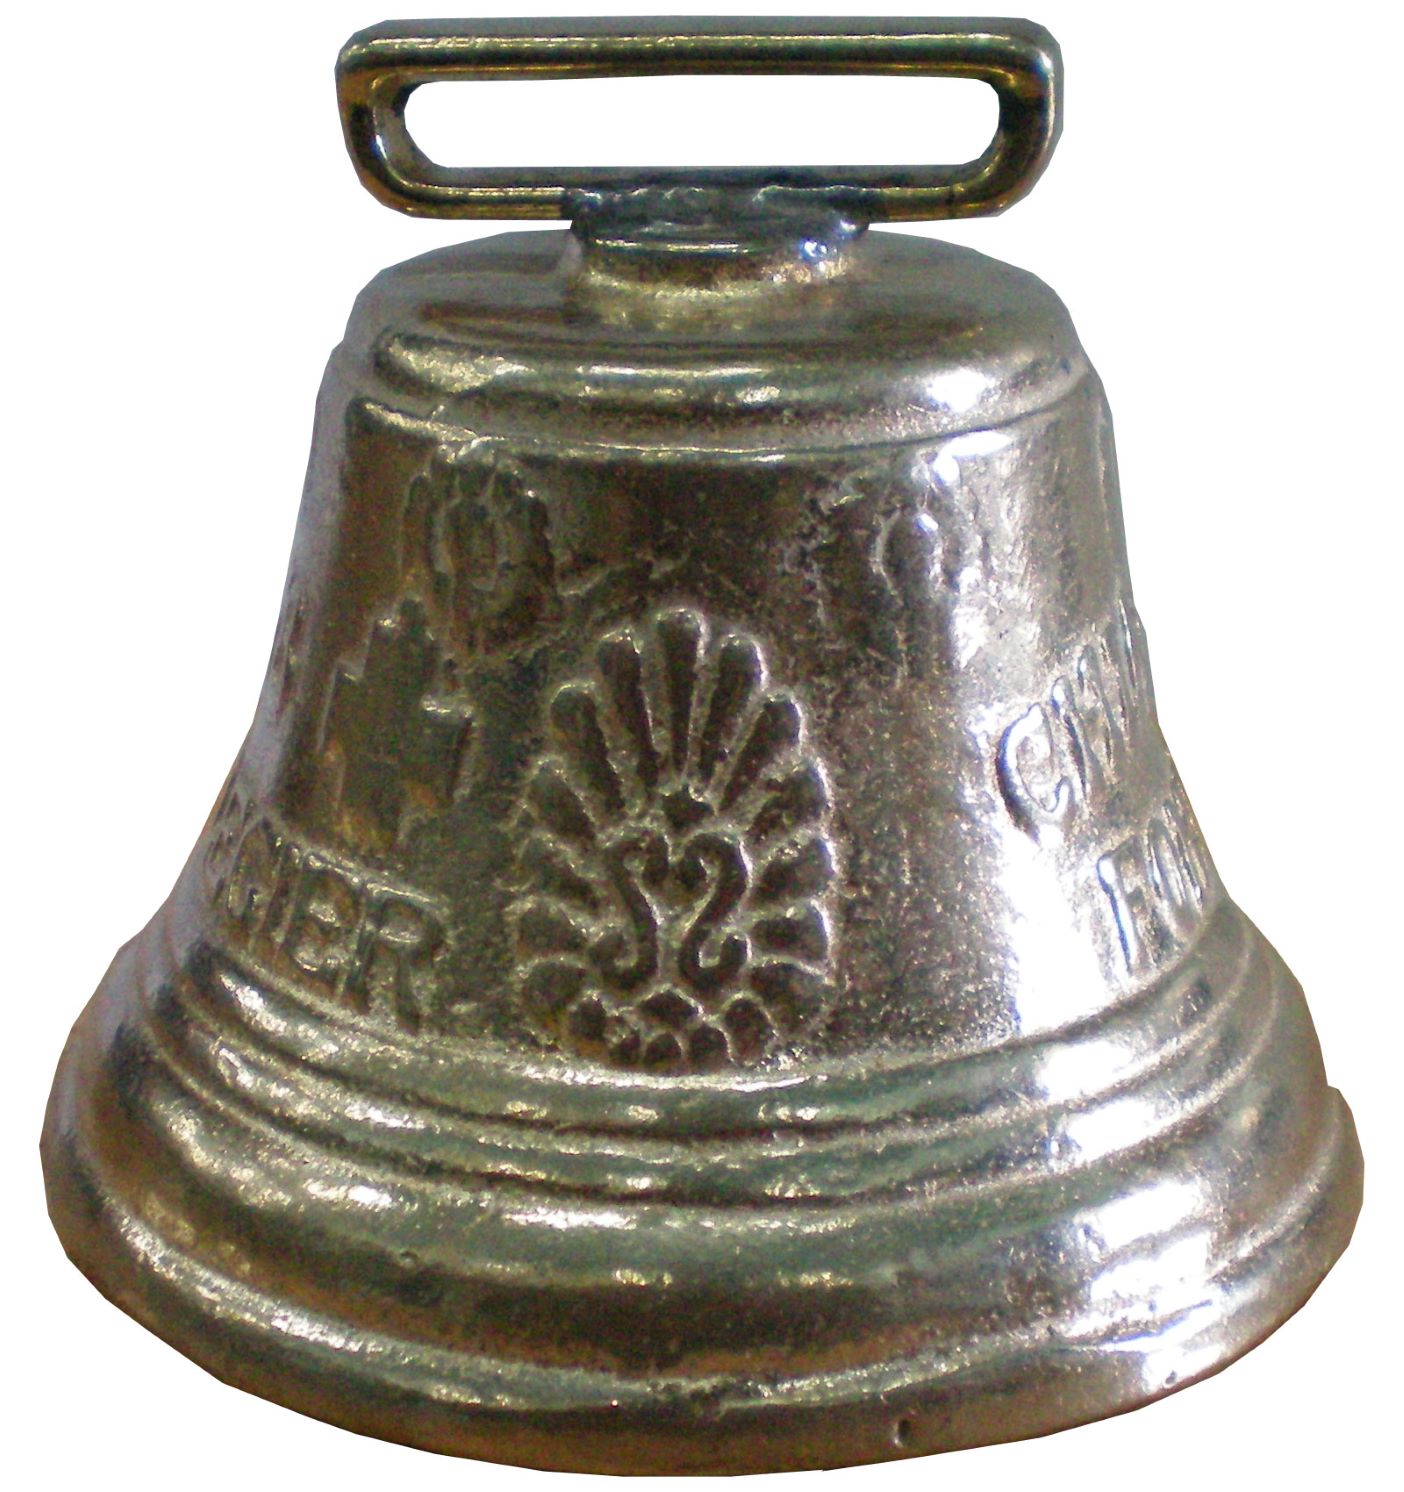 Cow bell, brass